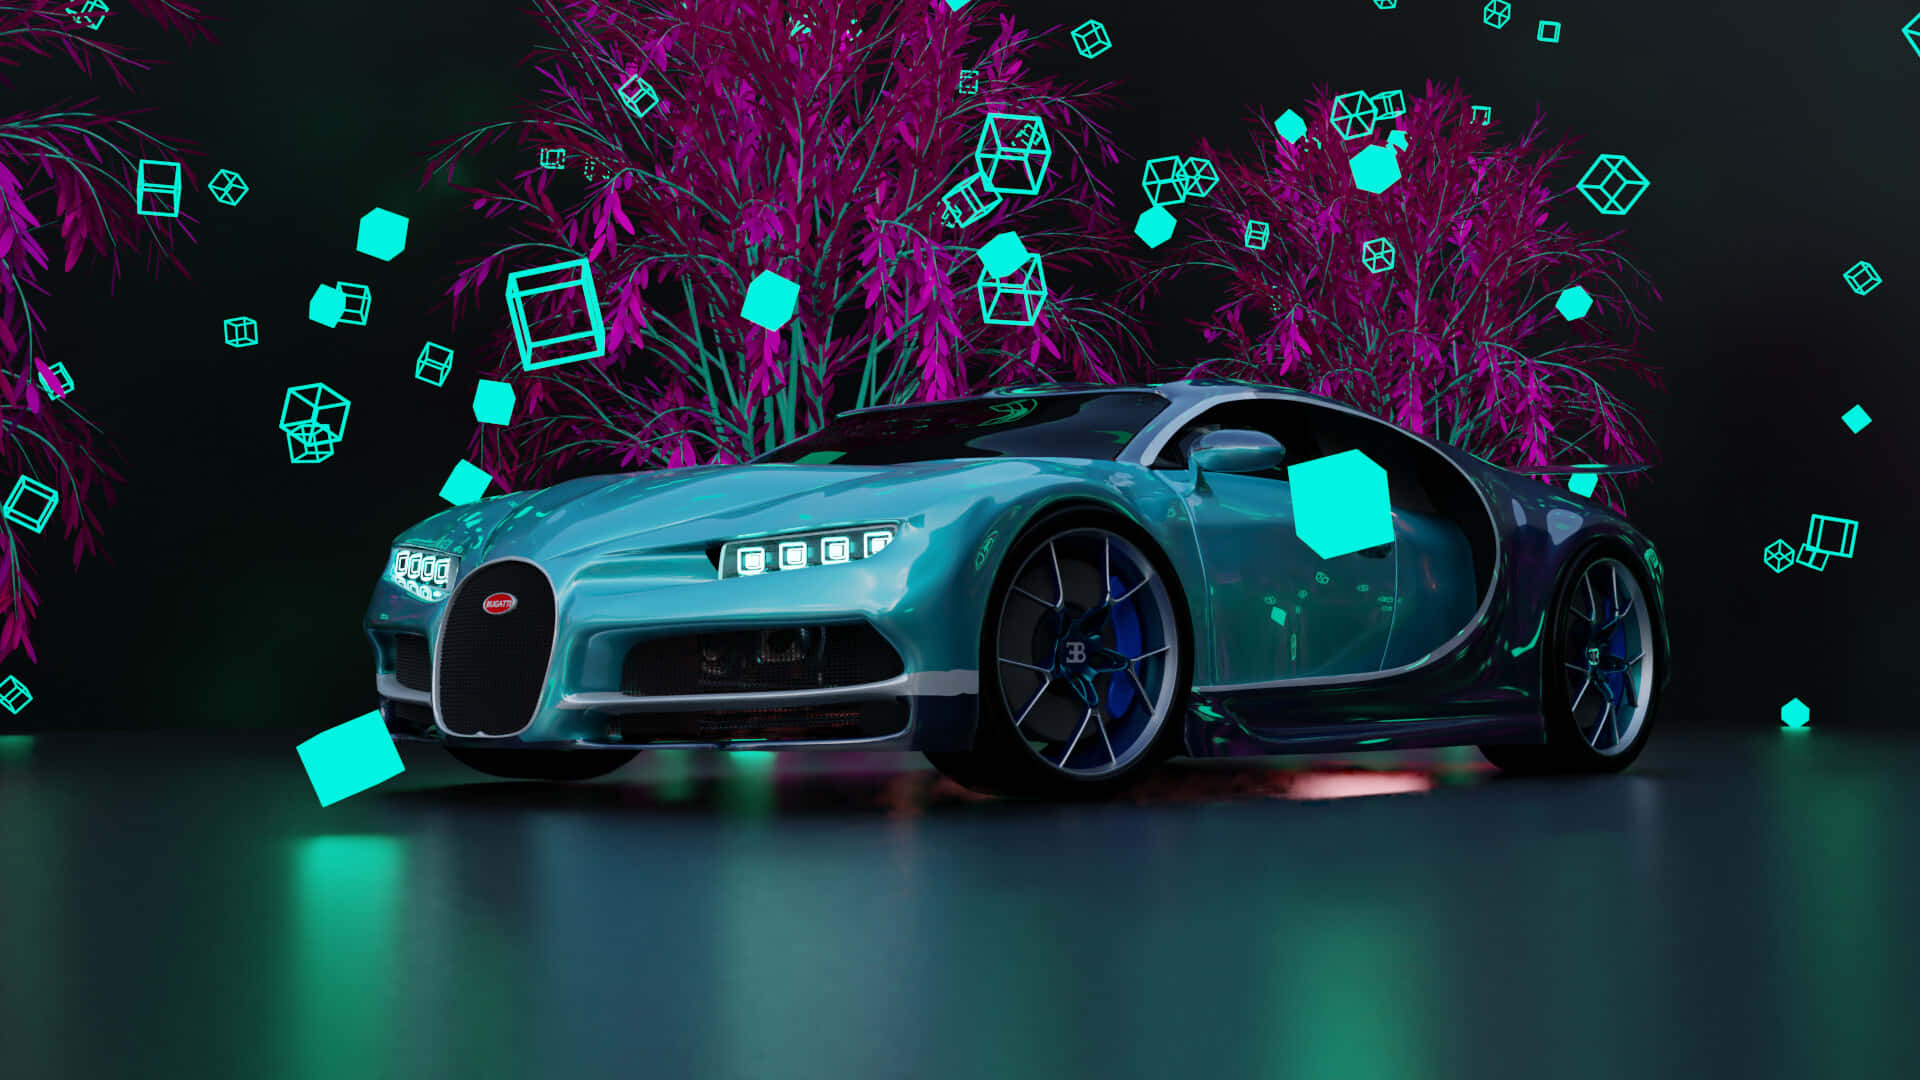 Entsperredeine Göttliche Geschwindigkeit Mit Dem Neon Bugatti Wallpaper